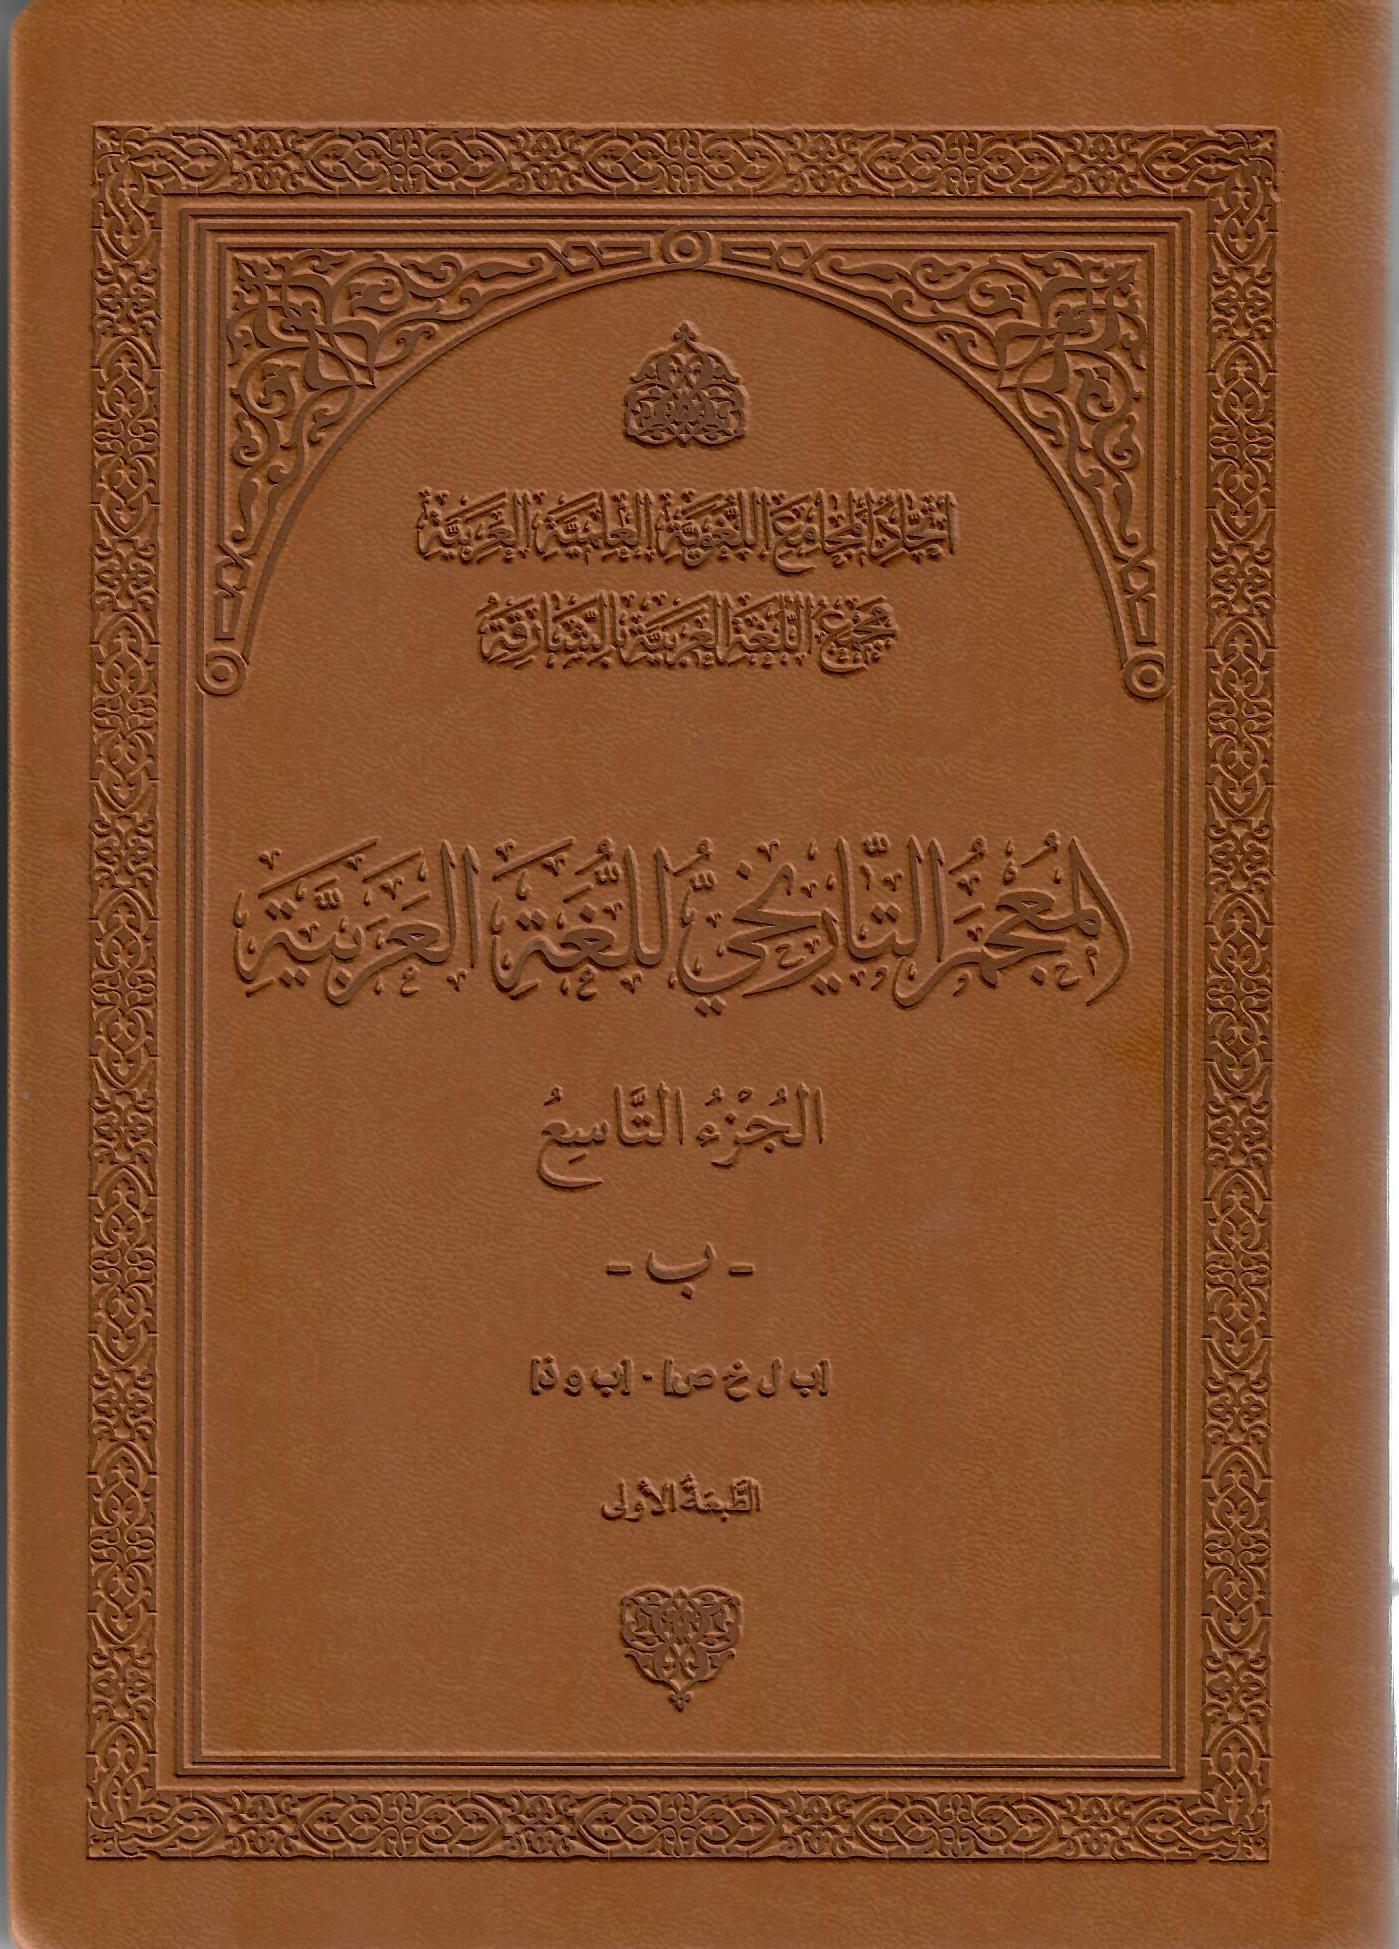 المجمع التاريخي للغة العربية الجزء التاسع